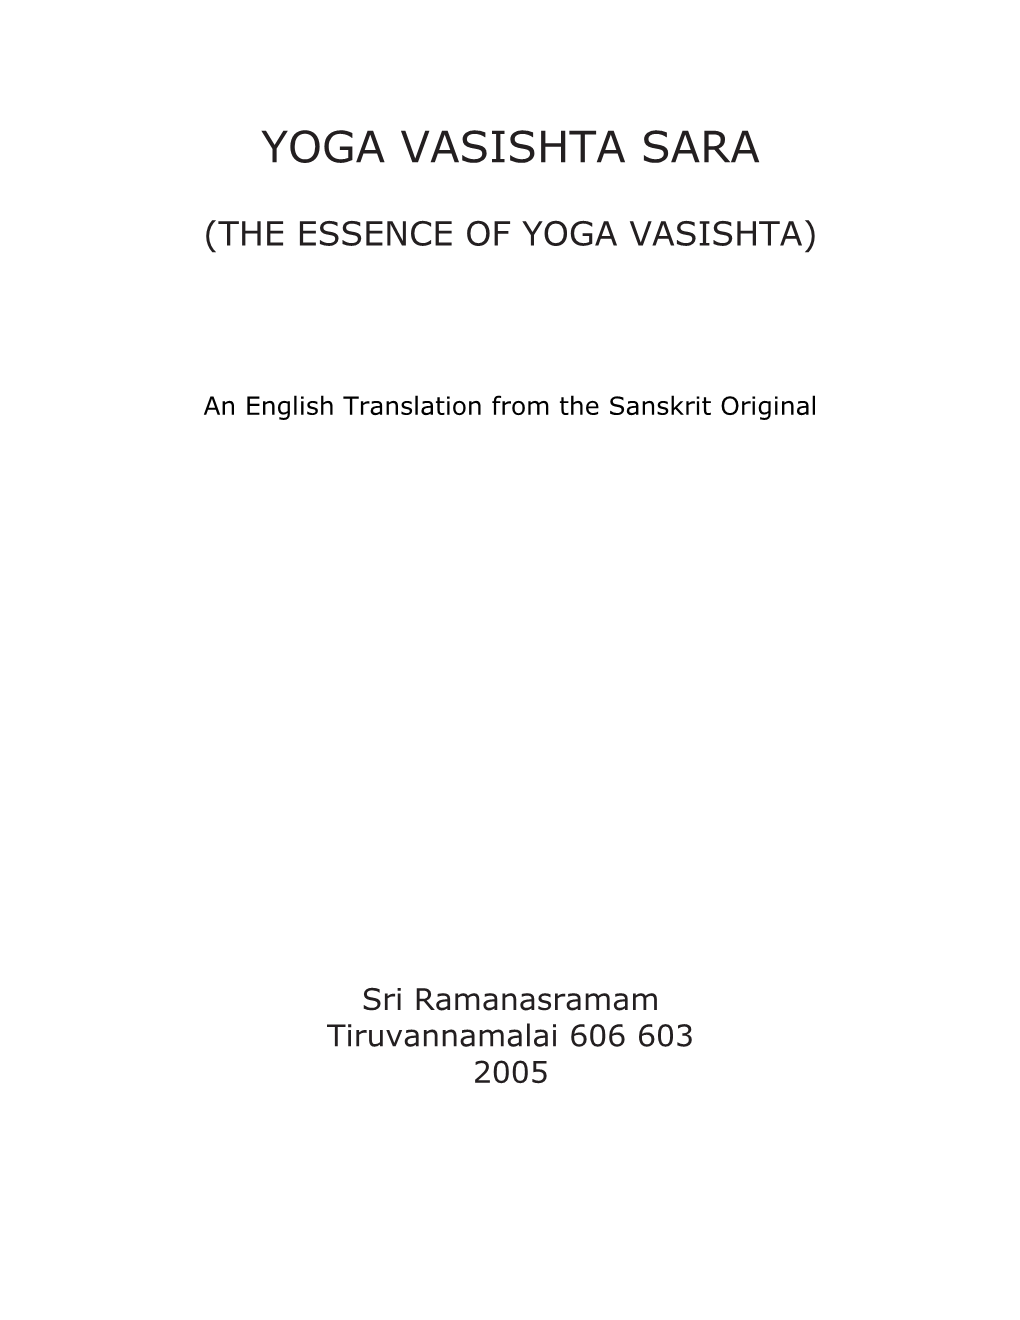 Yoga Vasishta Sara